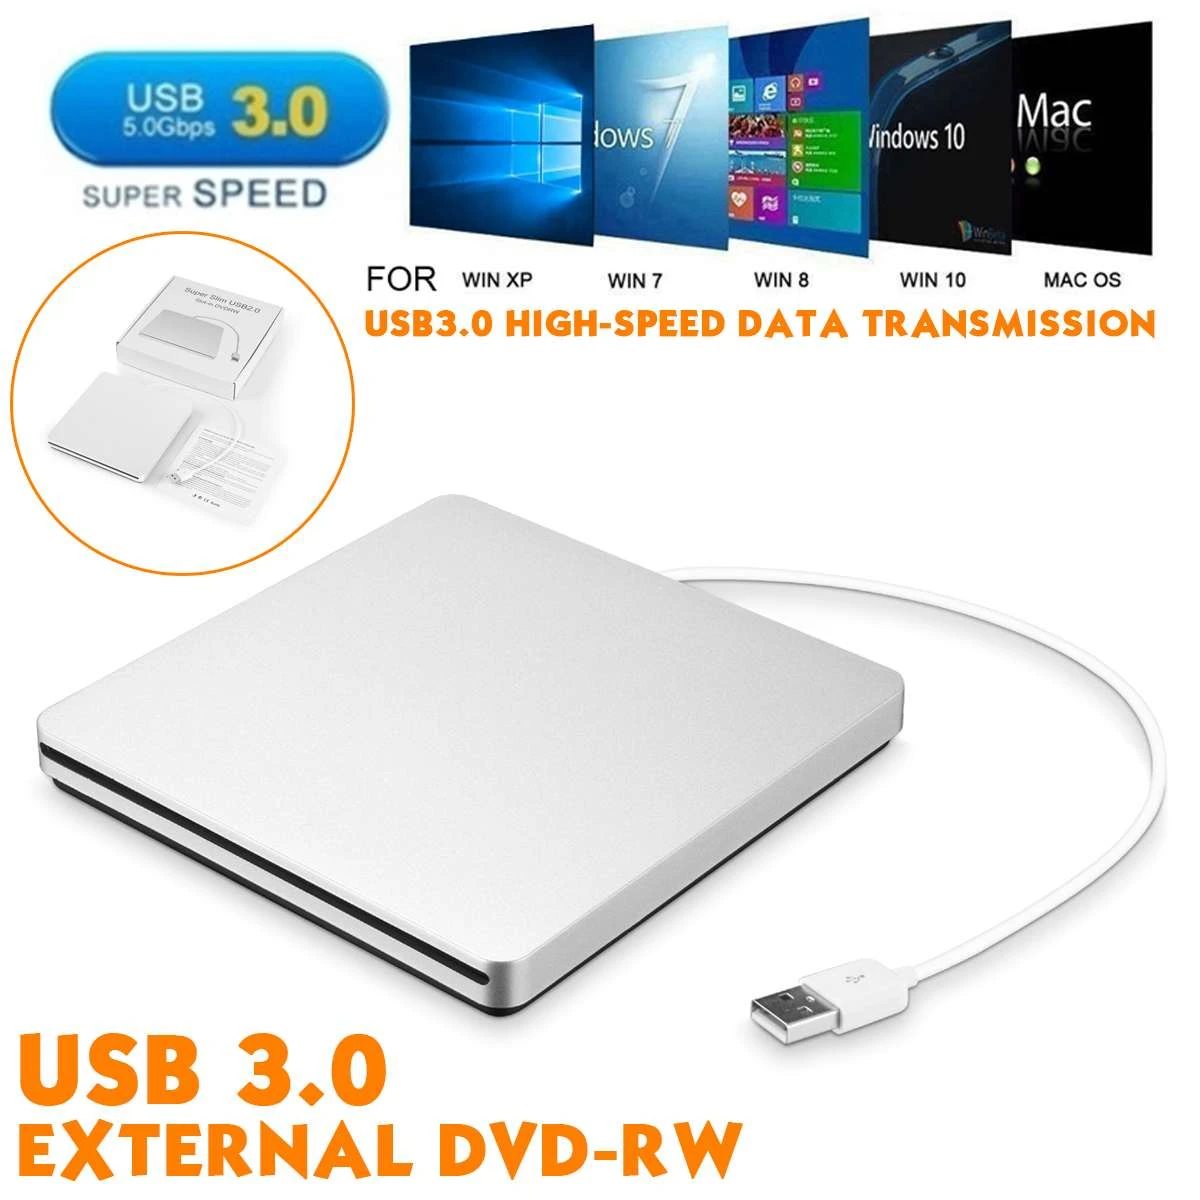 Vervelen Veroveraar koepel USB3.0 Externe Cd/Dvd Brander DVD ROM Optische Drive Speler Slot Laden  Portatil Voor Windows 7/8/10 Macs Notebook driver|Optische schijven| -  AliExpress